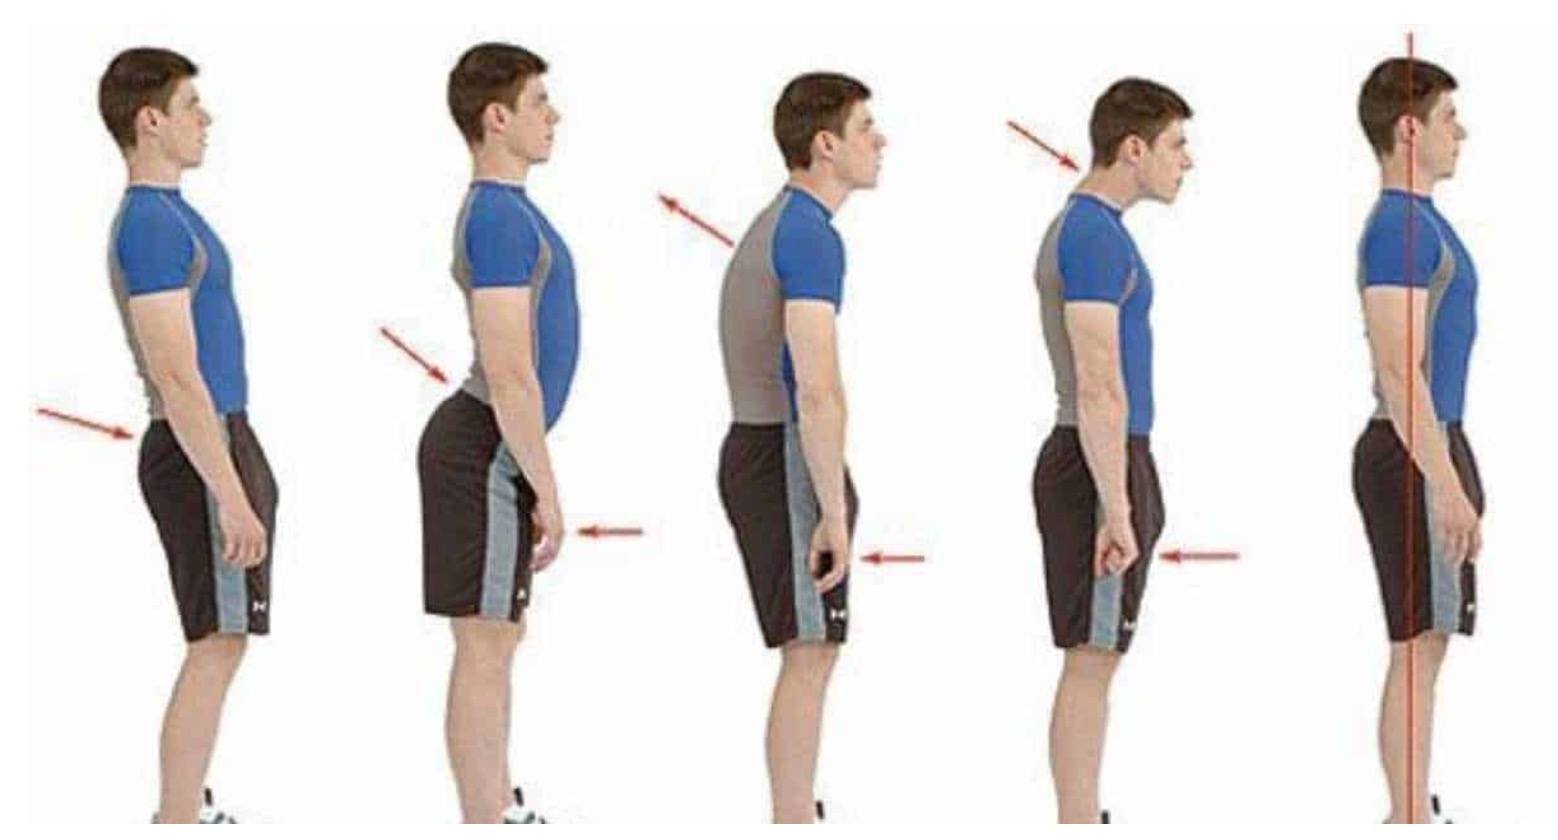 https://posturepro.co/wp-content/uploads/2019/08/back-brace-for-better-posture.jpg